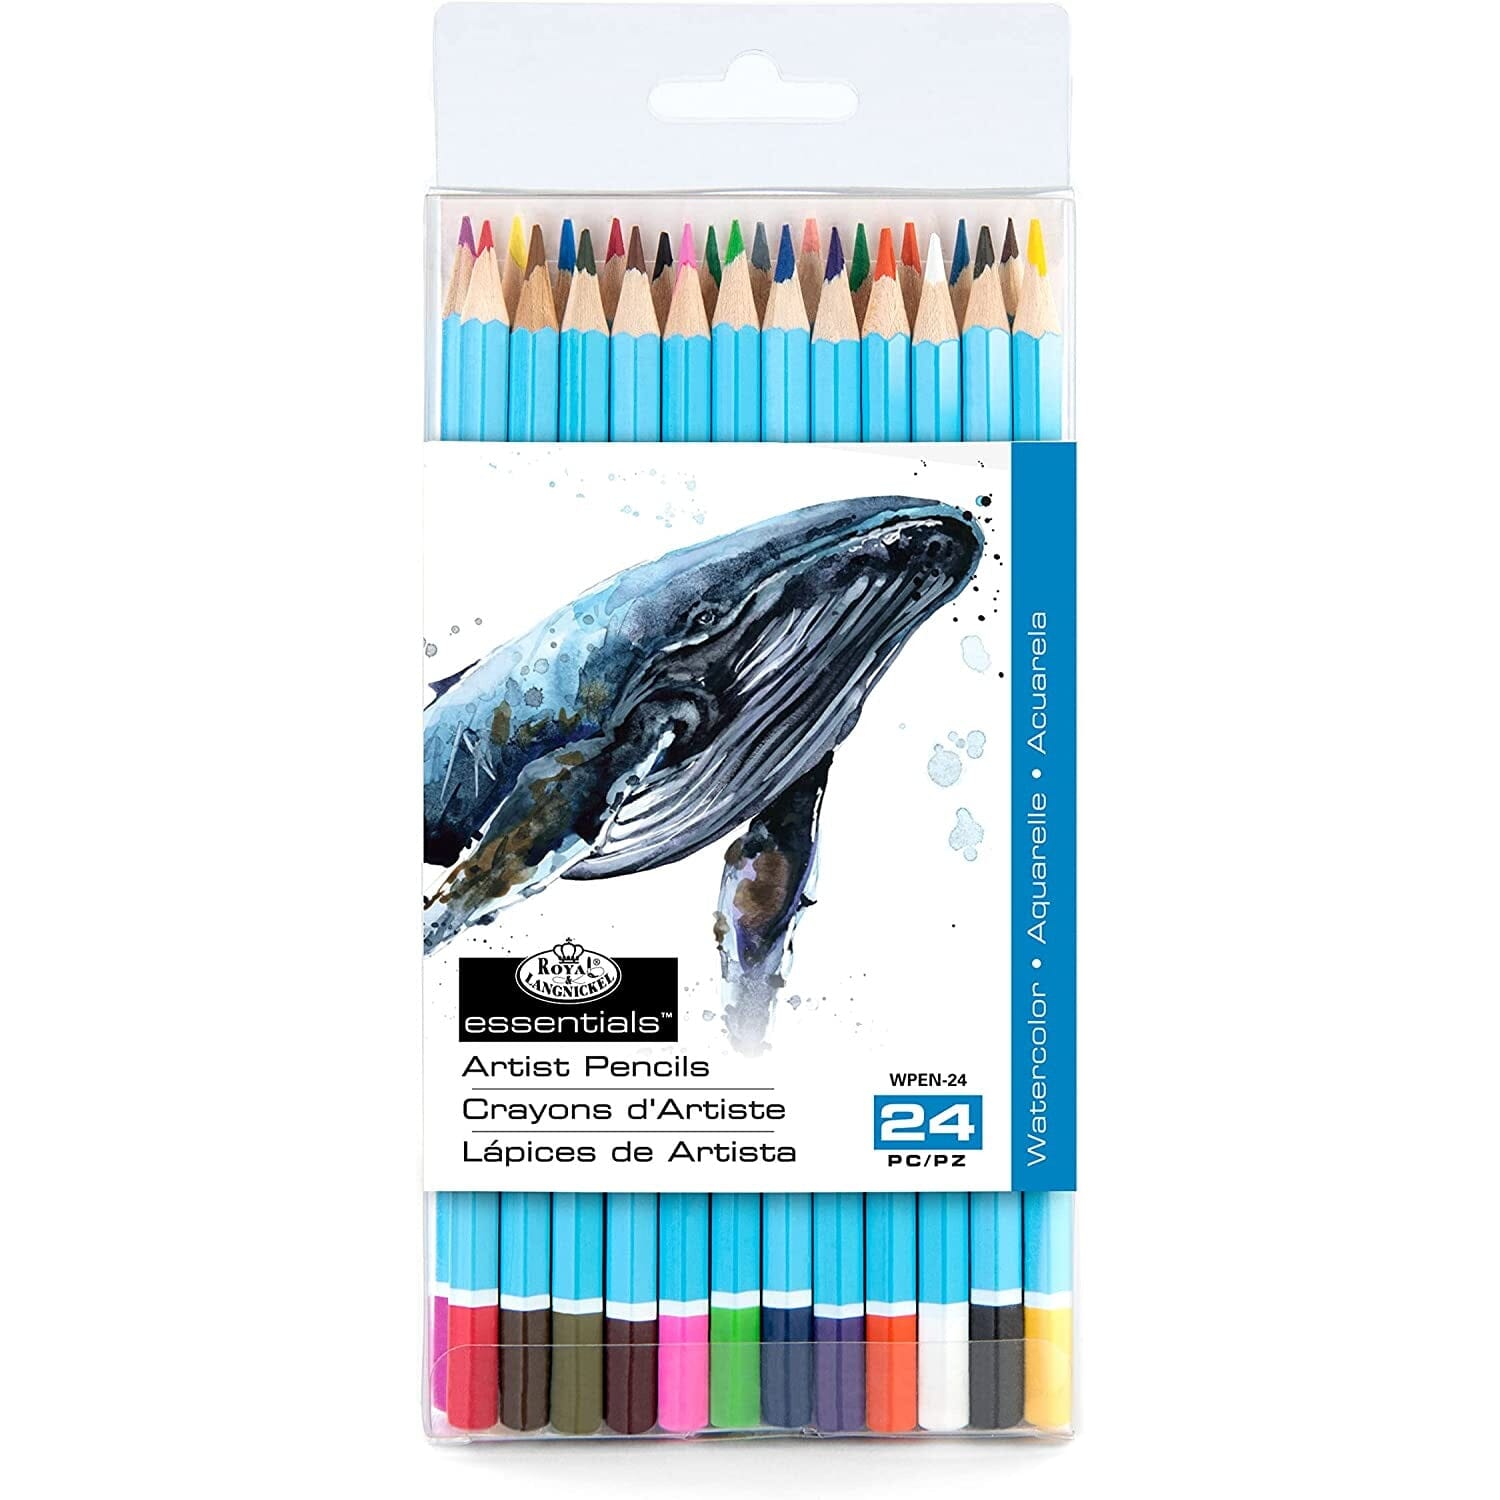 Watercolor Pencils Drawing & Painting Kits Royal Brush Set of 24